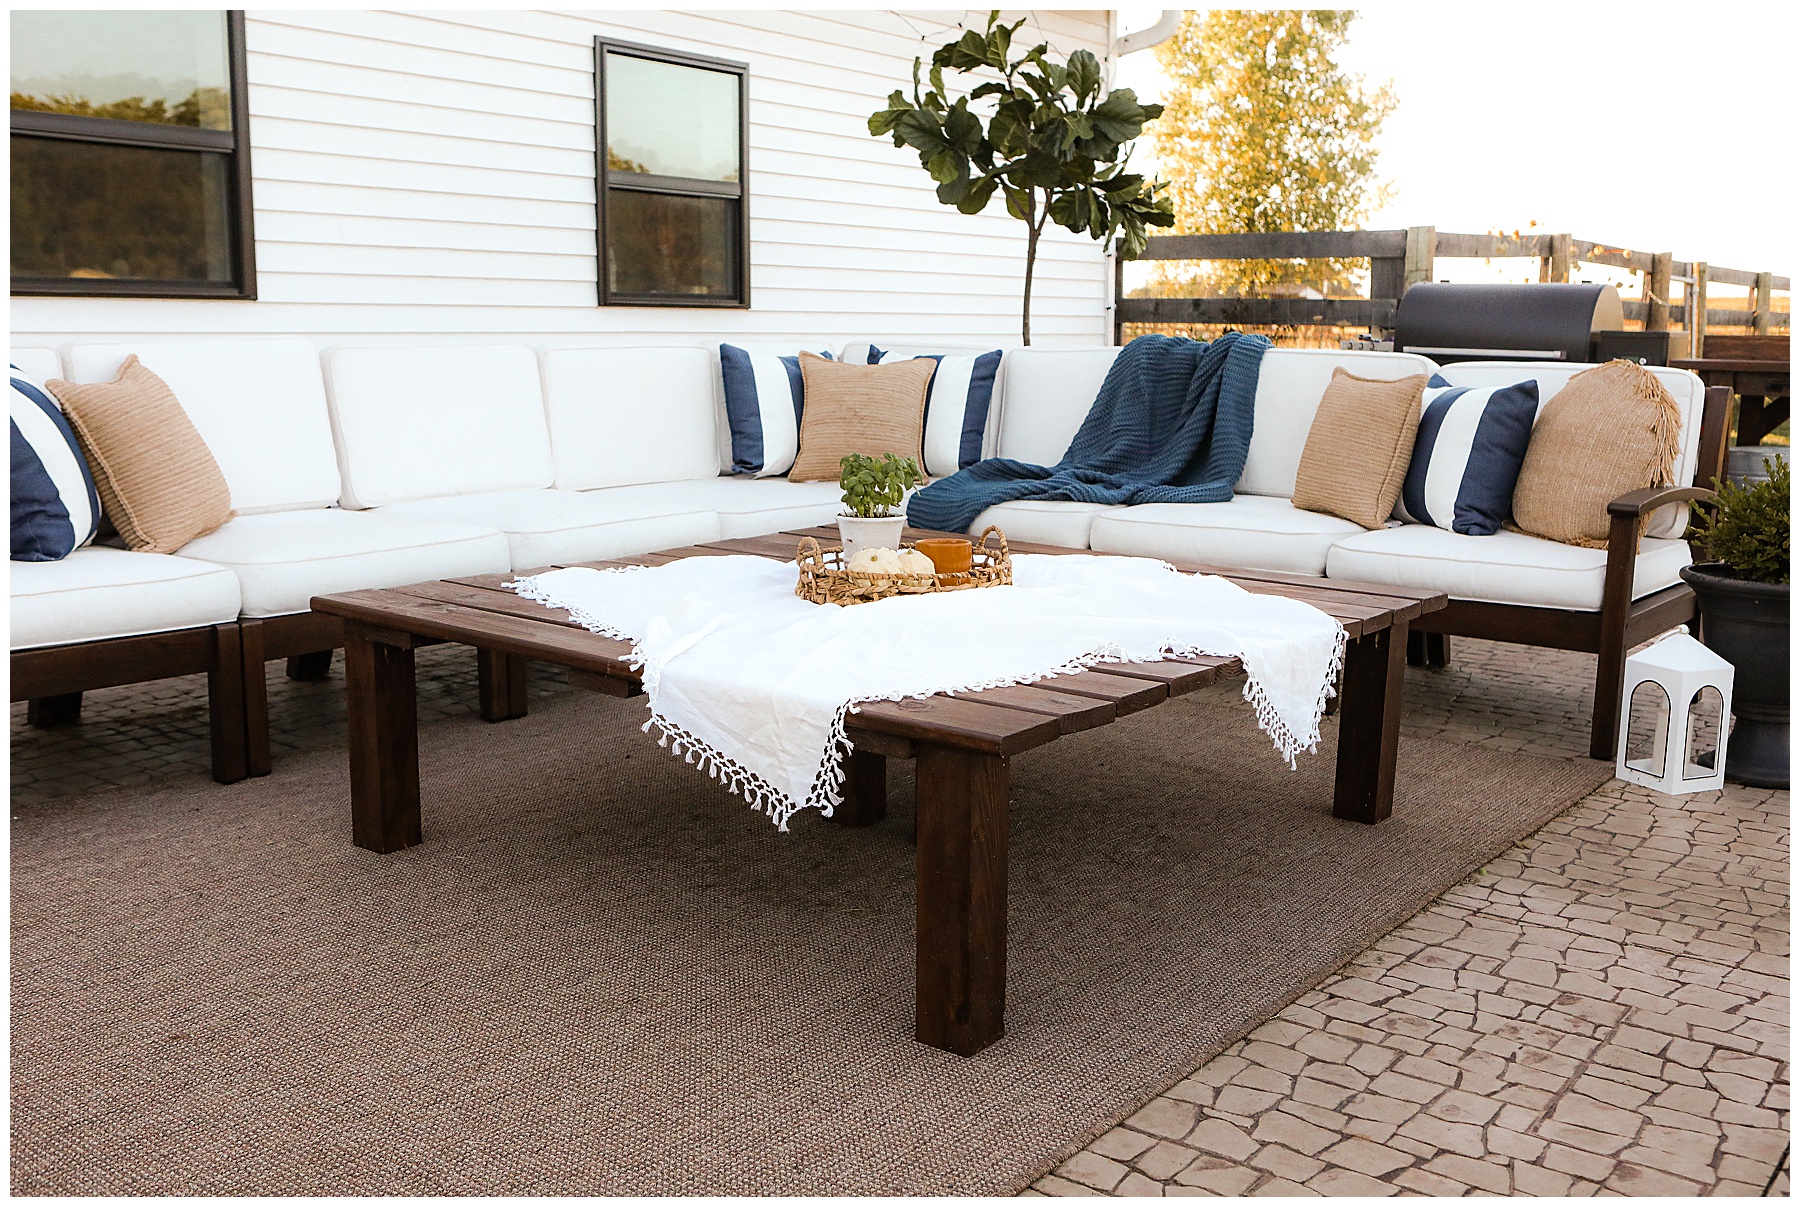 DIY outdoor coffee table